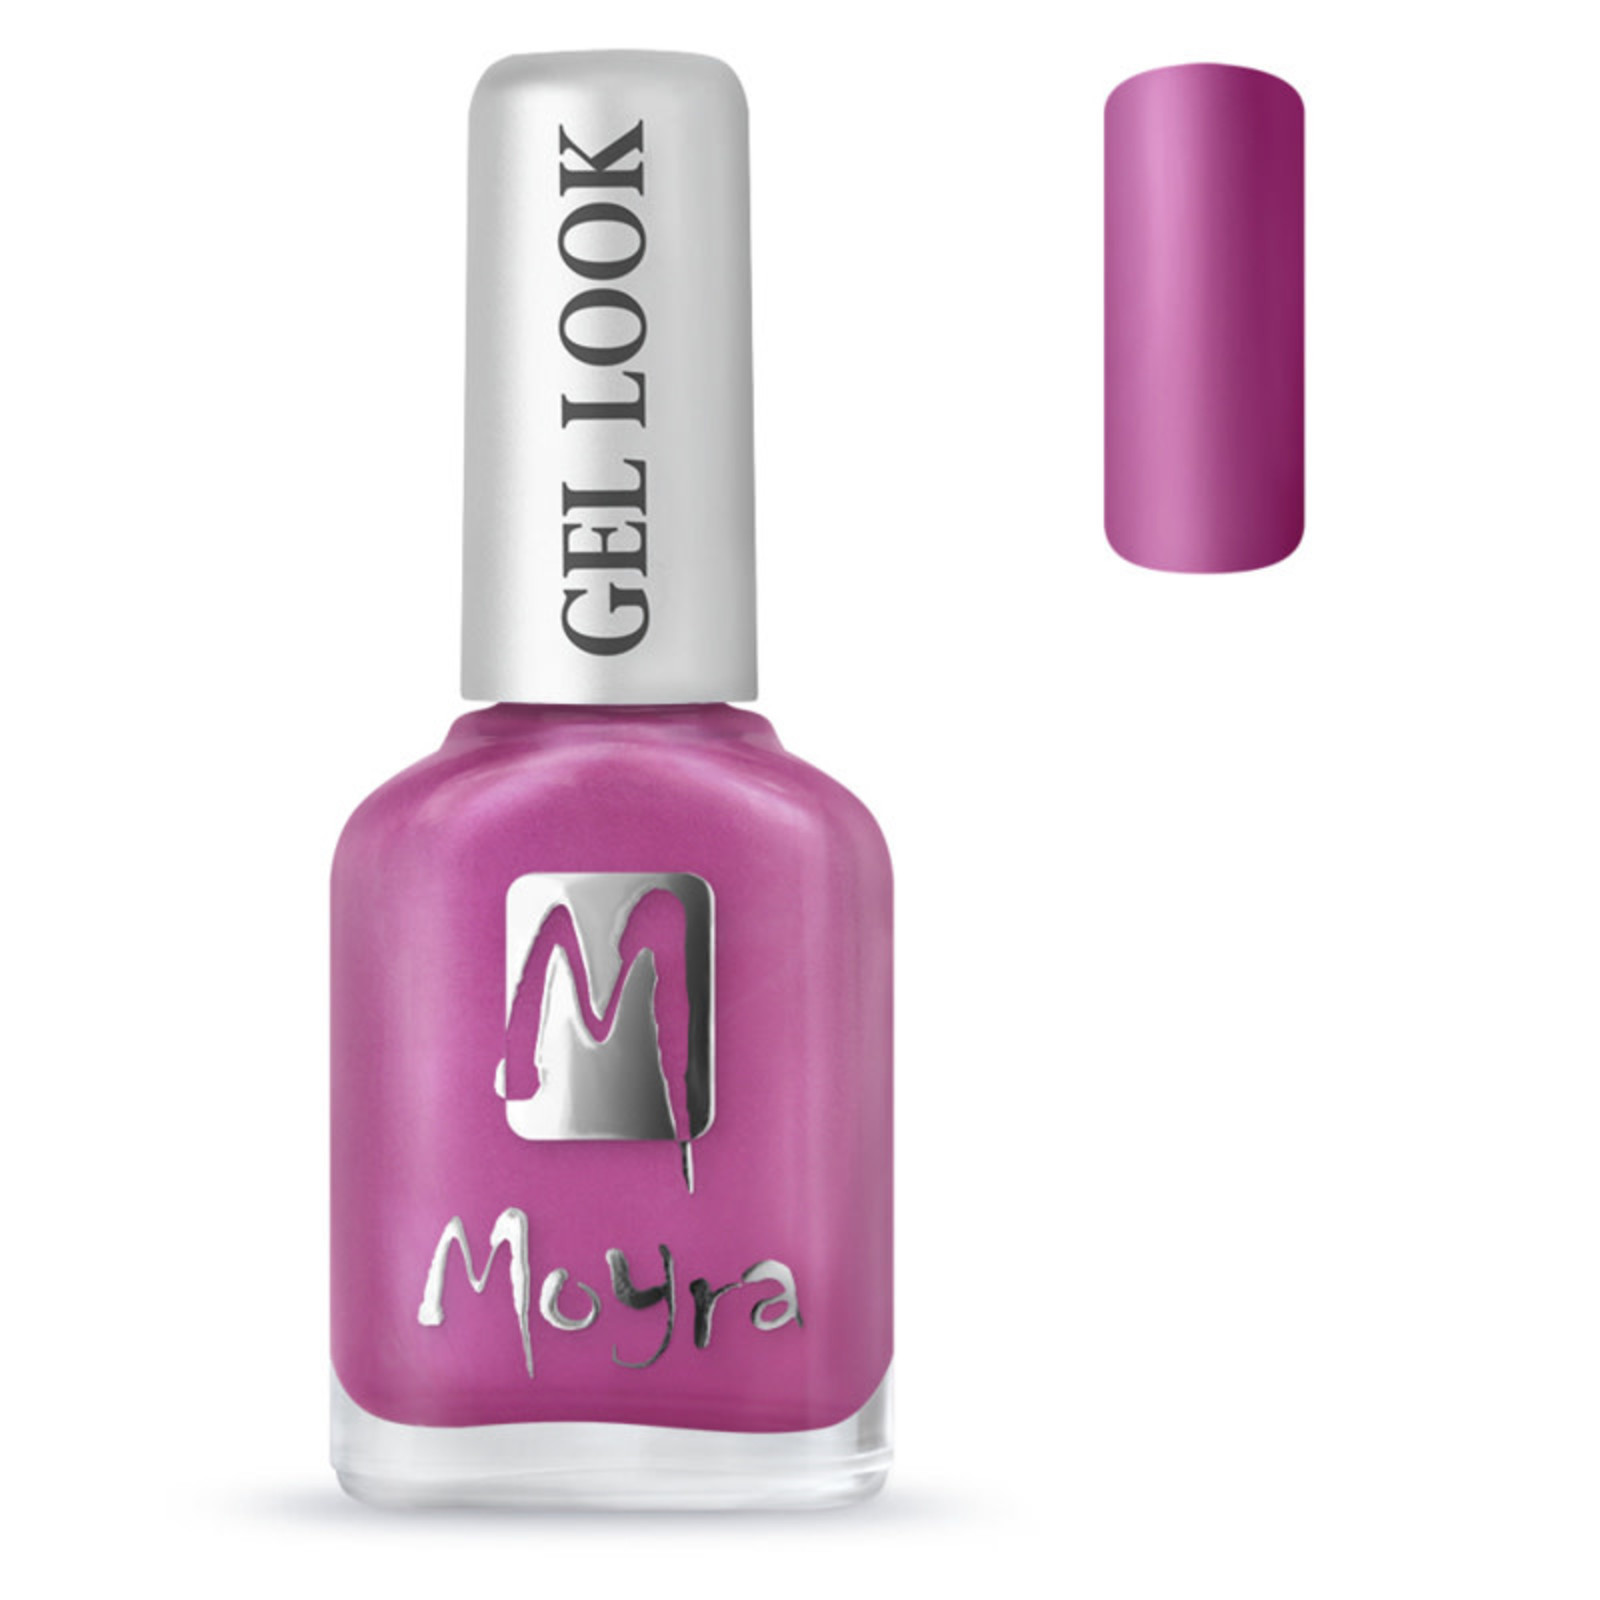 Moyra Moyra nail polish gel look 1019